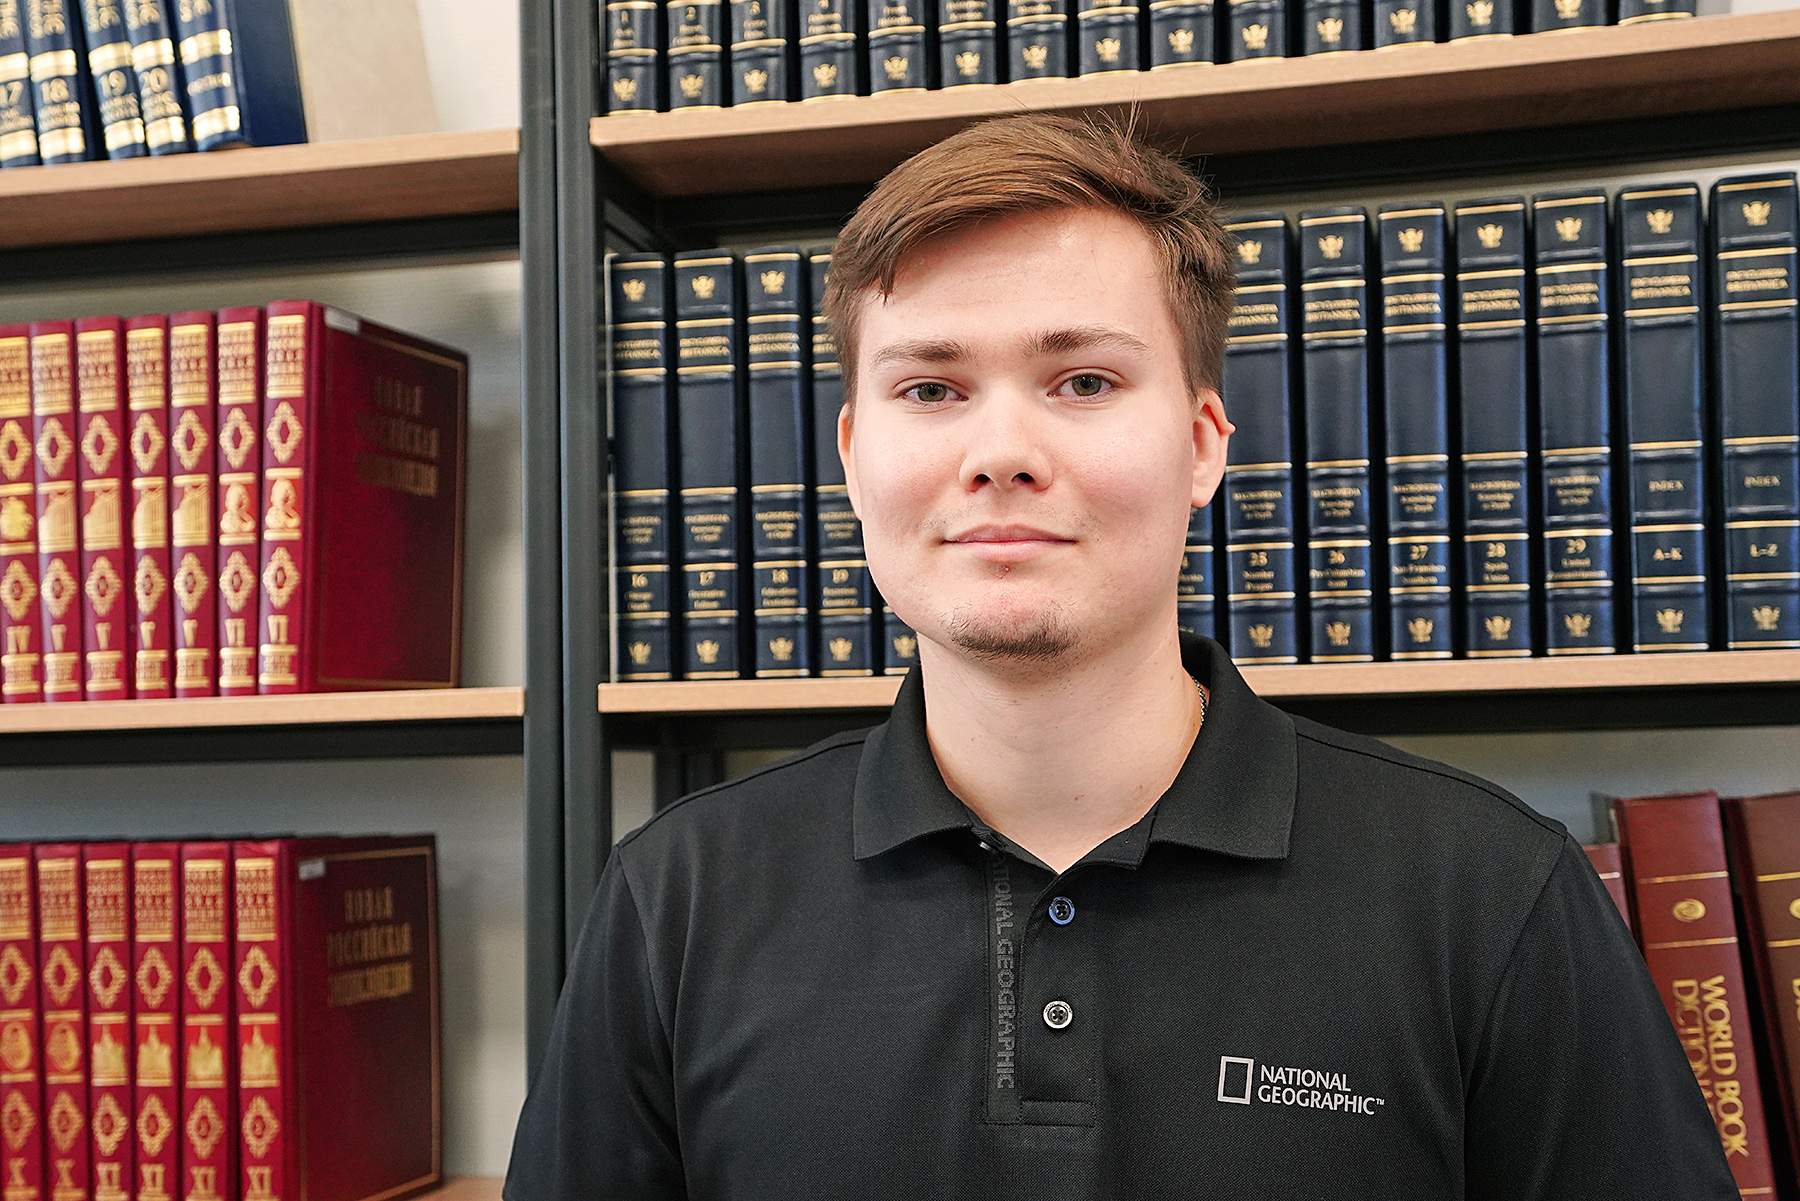 Аспирант ВВГУ Артем Падин стал участником научного исследования о судебно-правовой реформе по гранту Президента РФ